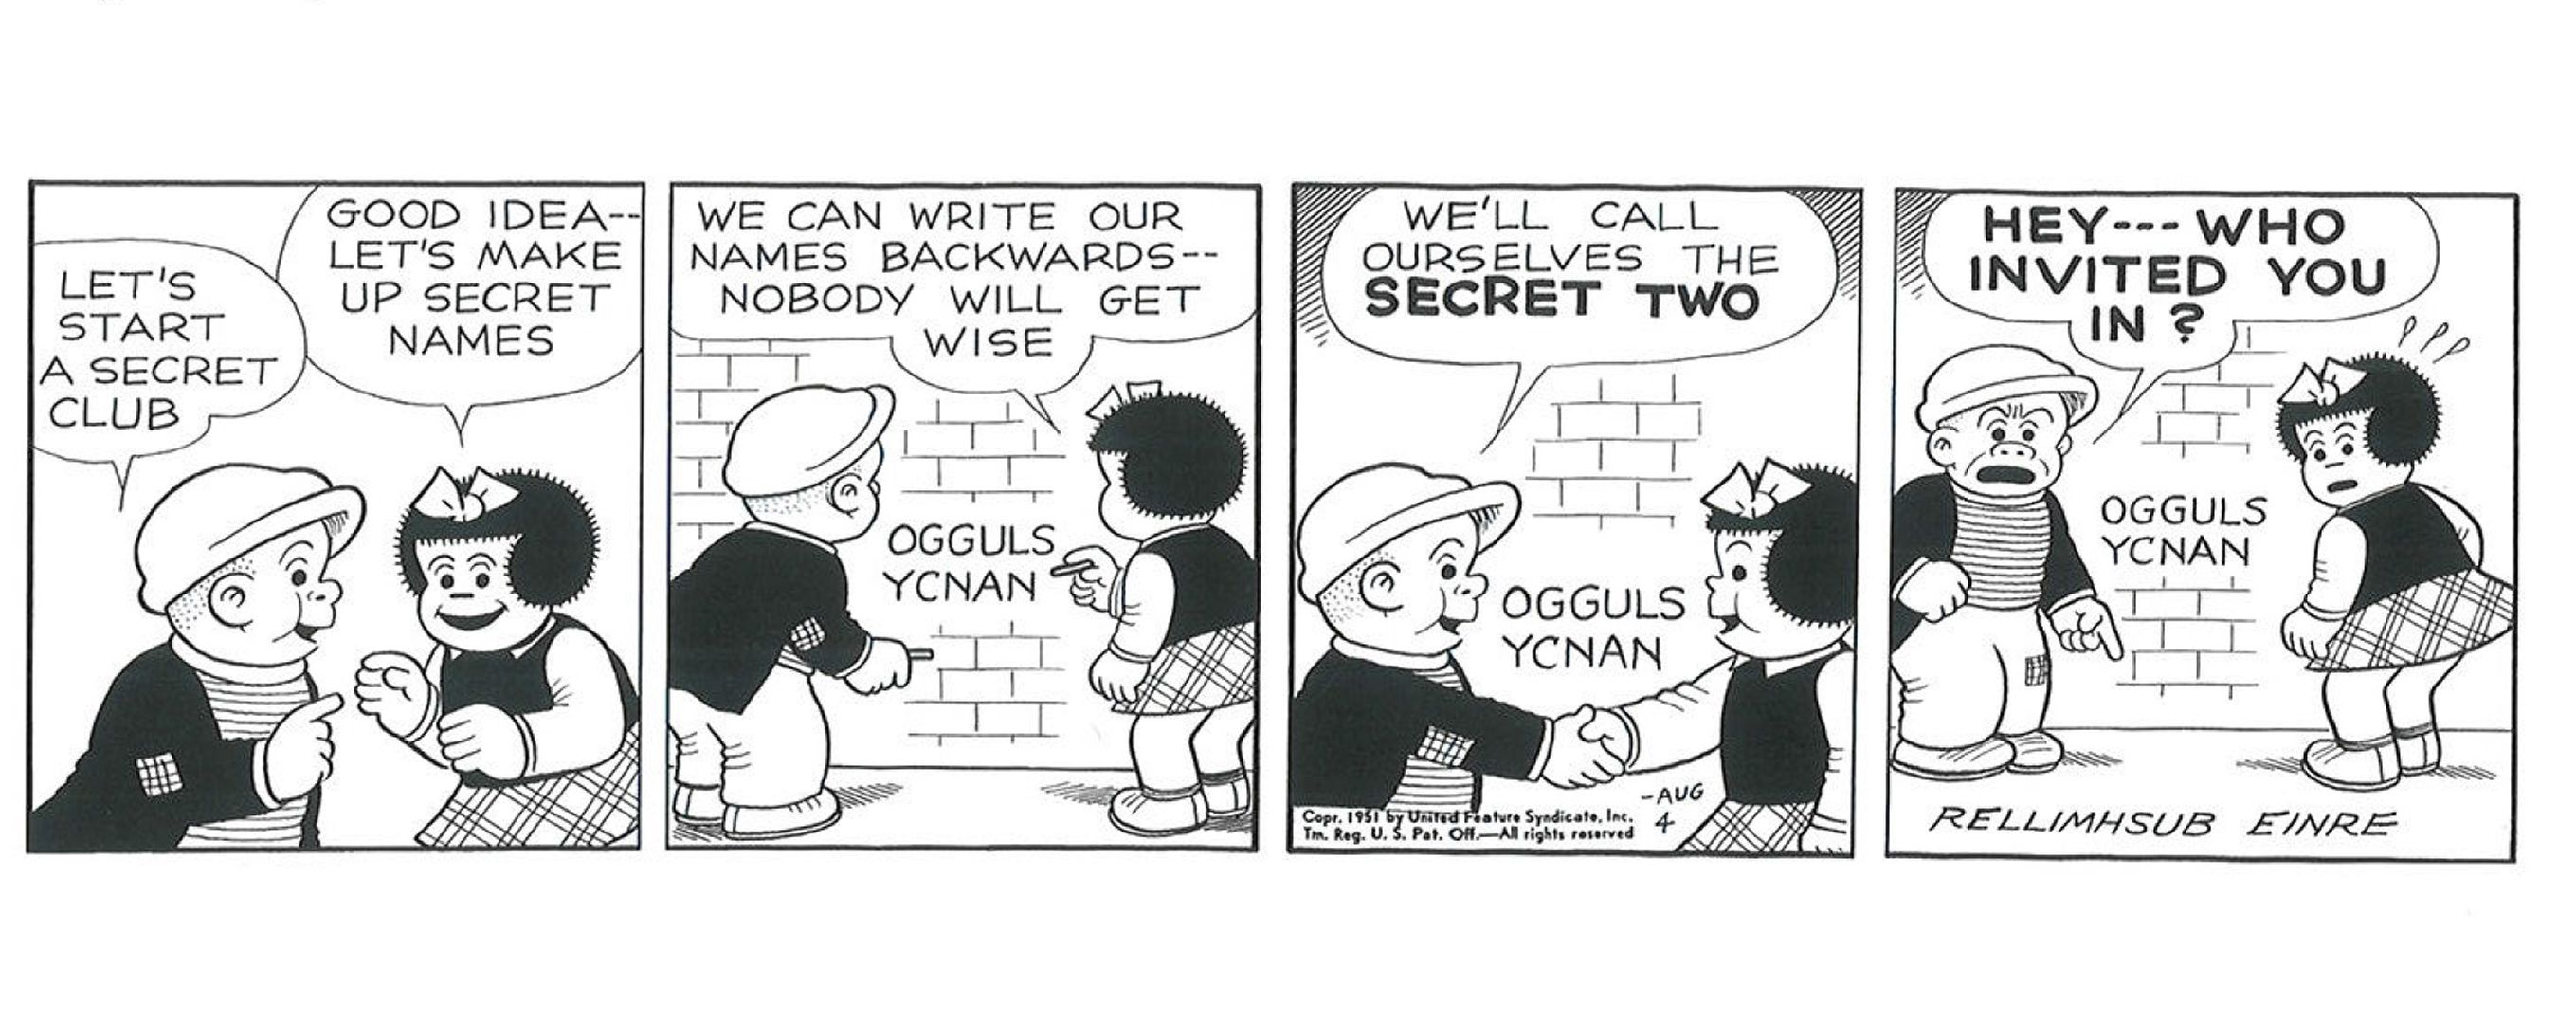 Nancy e Sluggo formam um clube secreto, assinando seus nomes ao contrário como um código. Infelizmente, o criador Ernie Bushmiller se juntou a eles com sua assinatura no painel final.